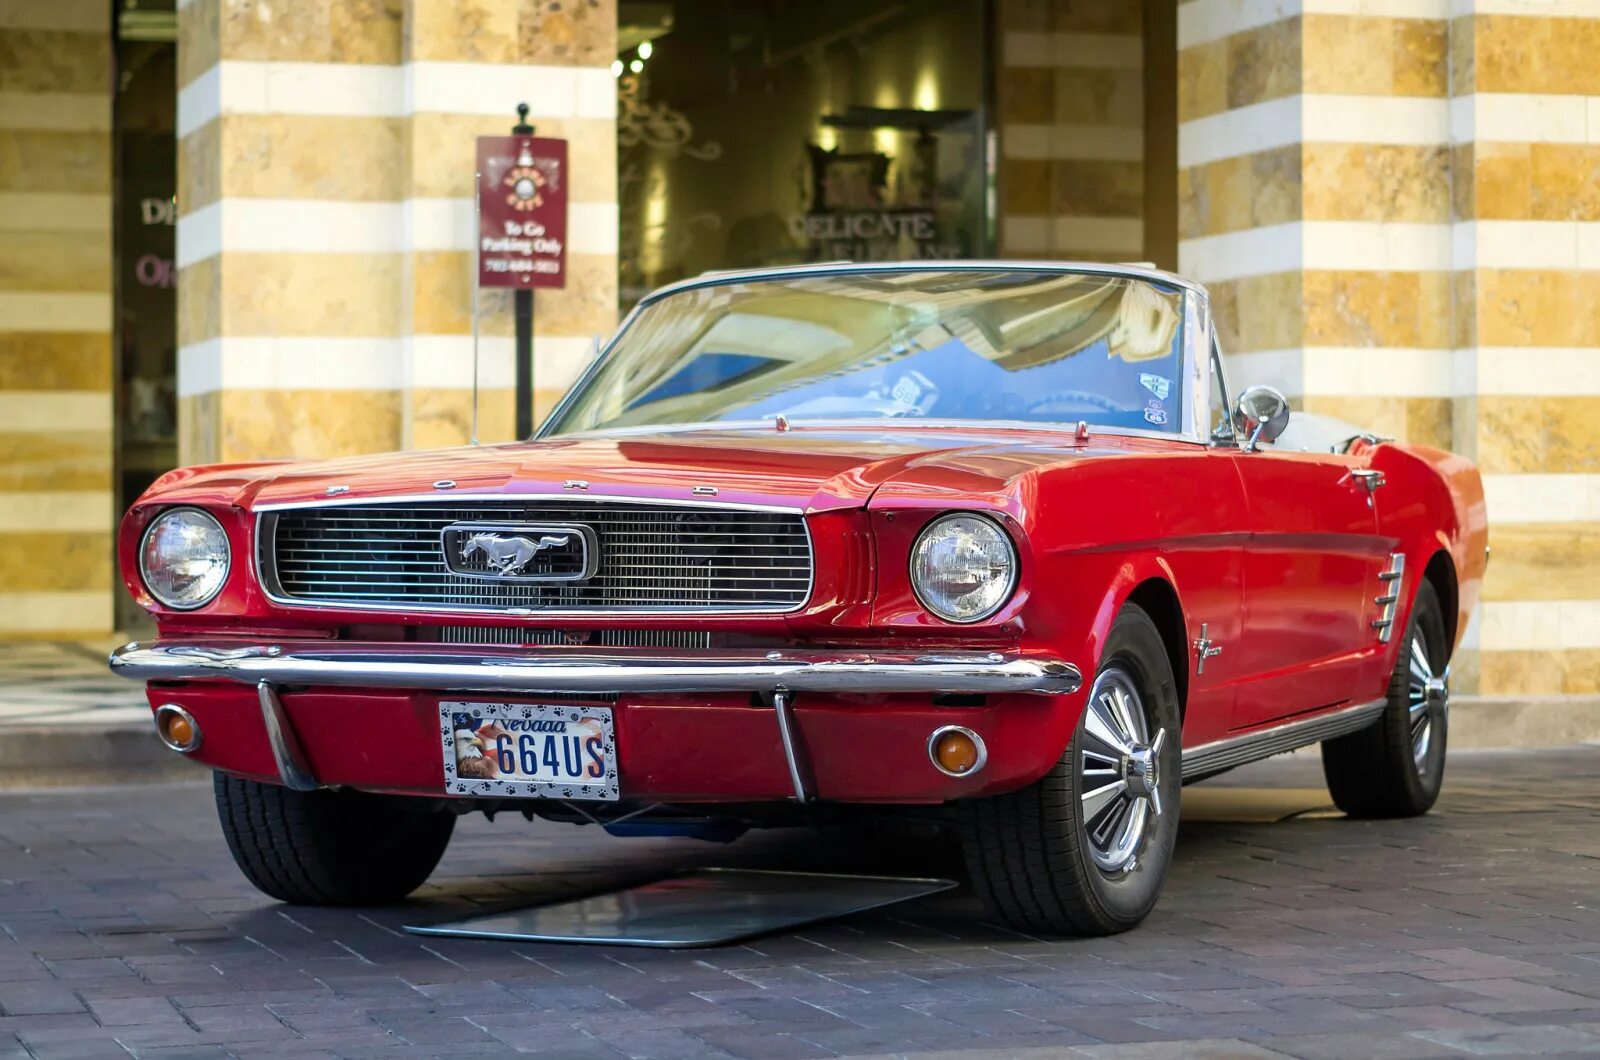 Первое поколение автомобилей. Форд Мустанг 1 поколения. Красный Ford Mustang 1966. Форд Мустанг 1960. Форд Мустанг 1969 красный.